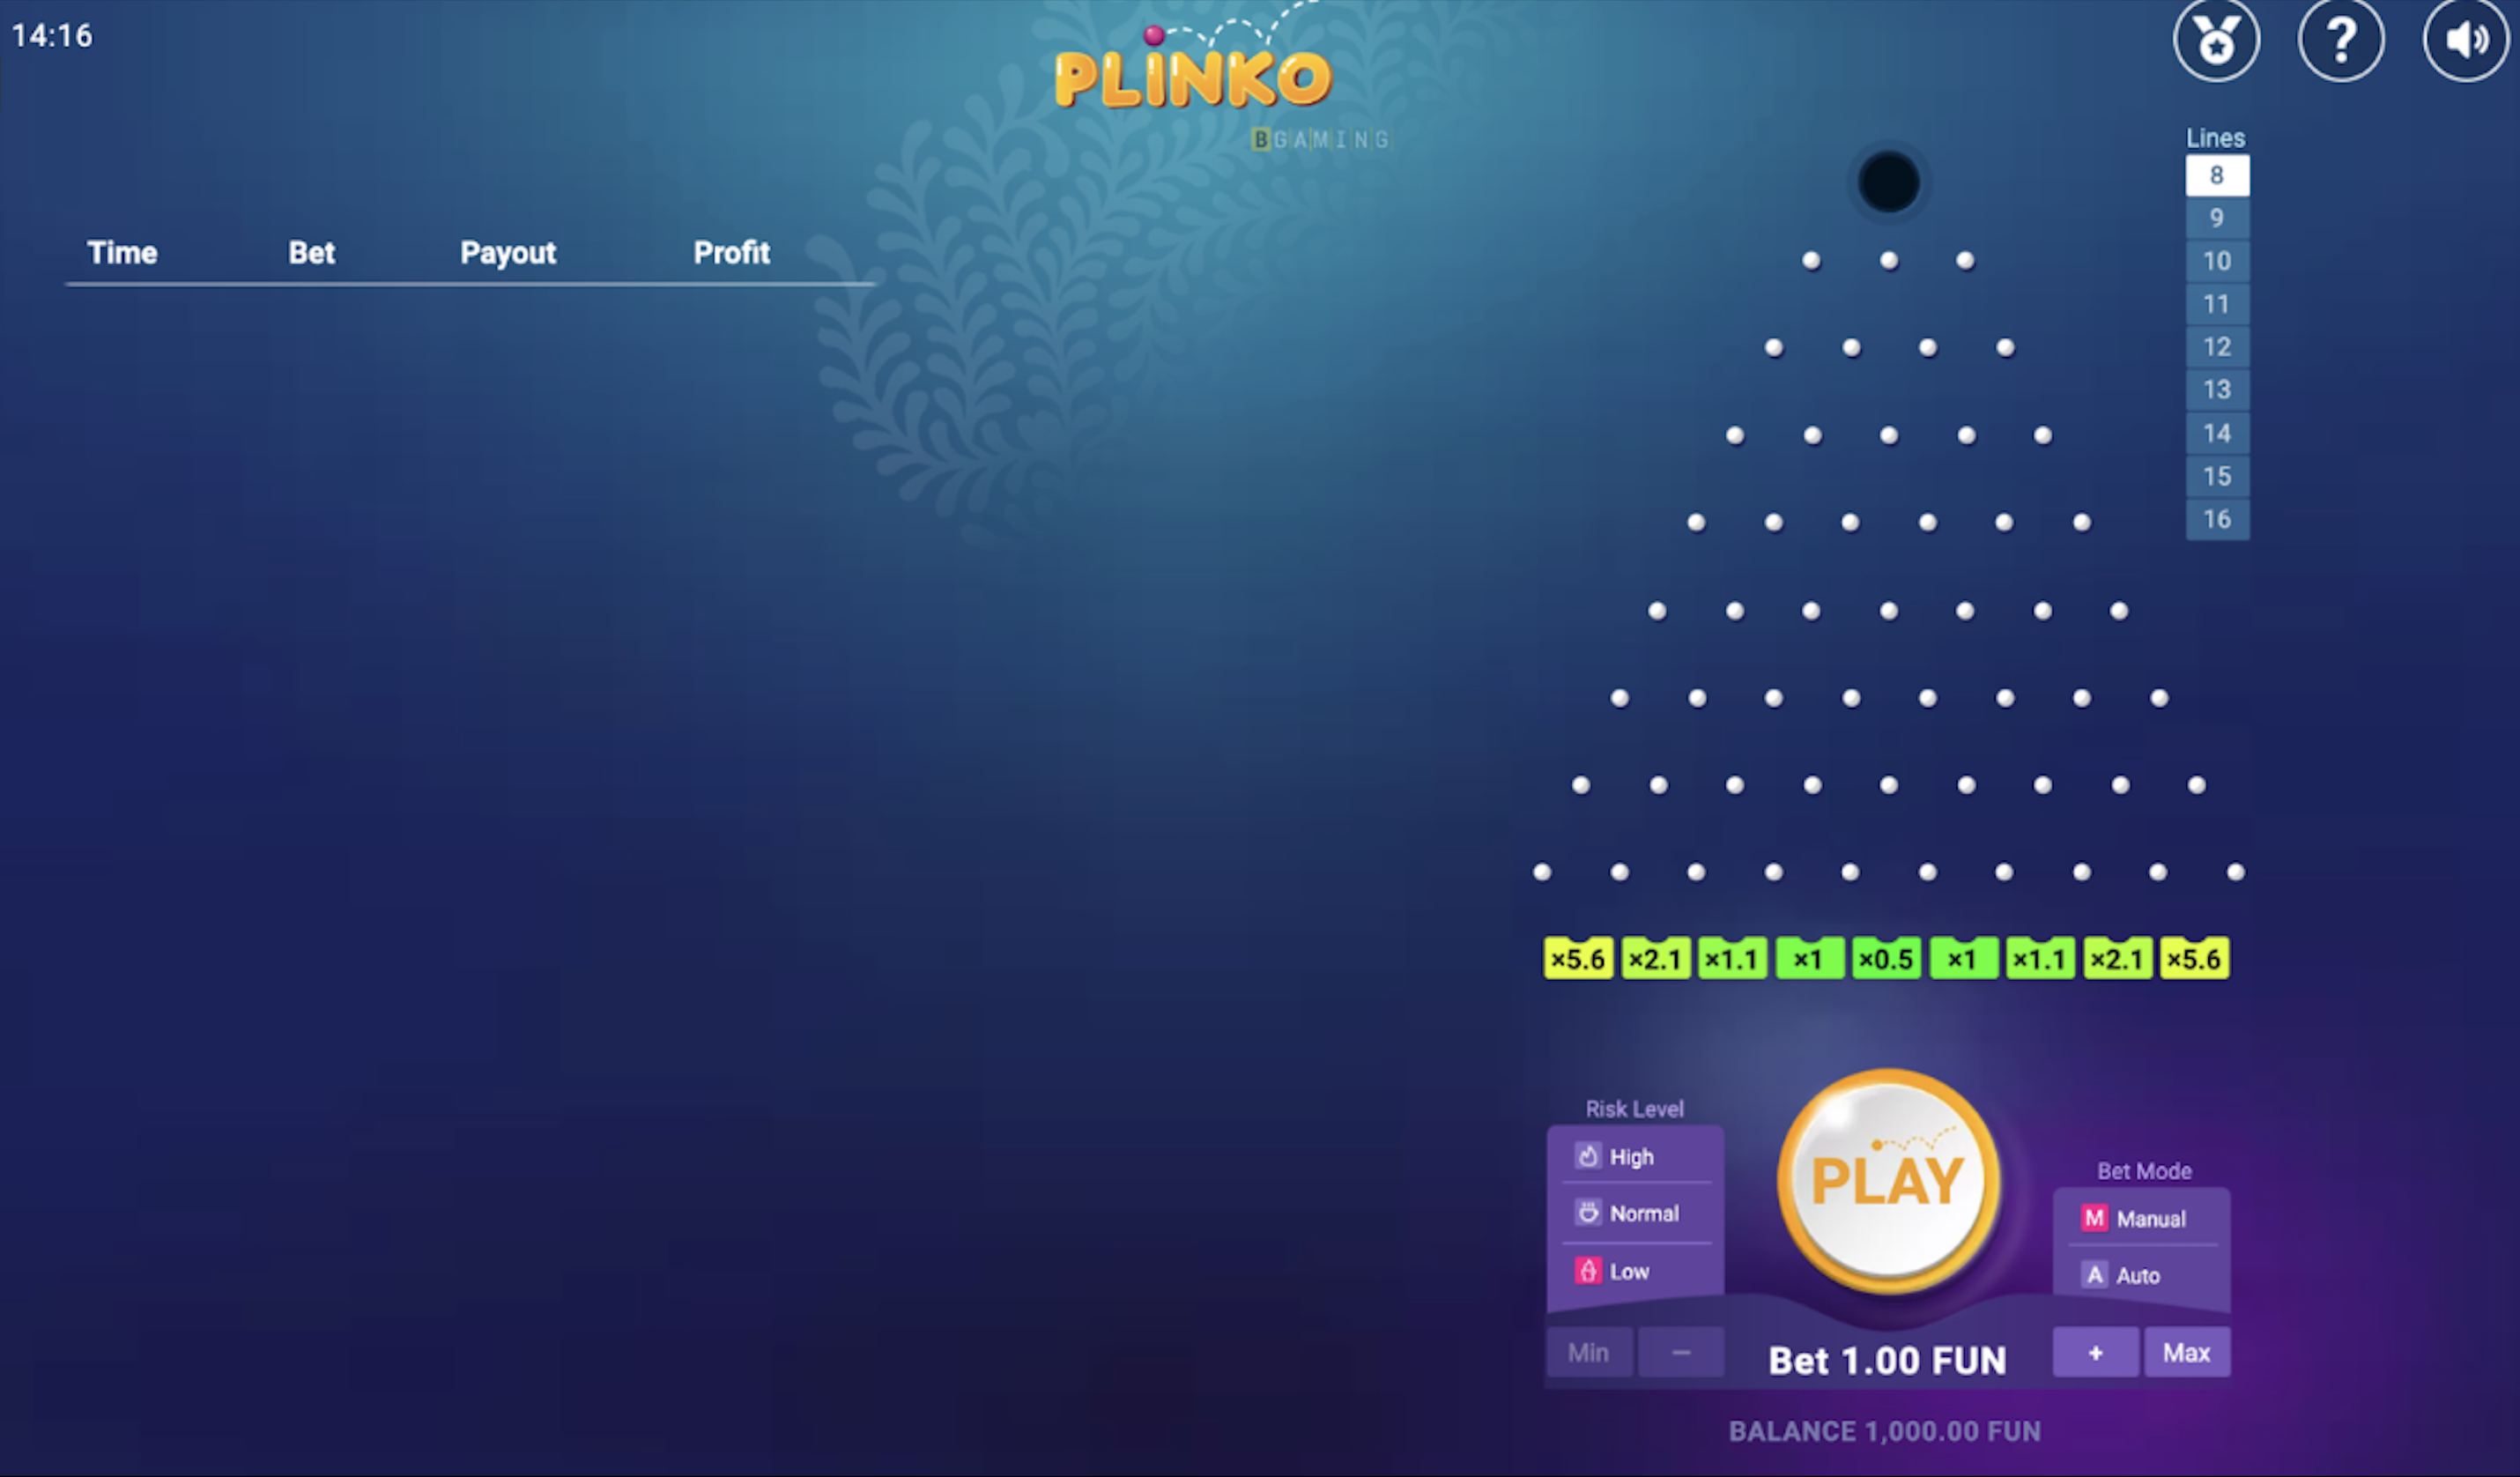 What is Plinko? | Qual é a estratégia do jogo Plinko?